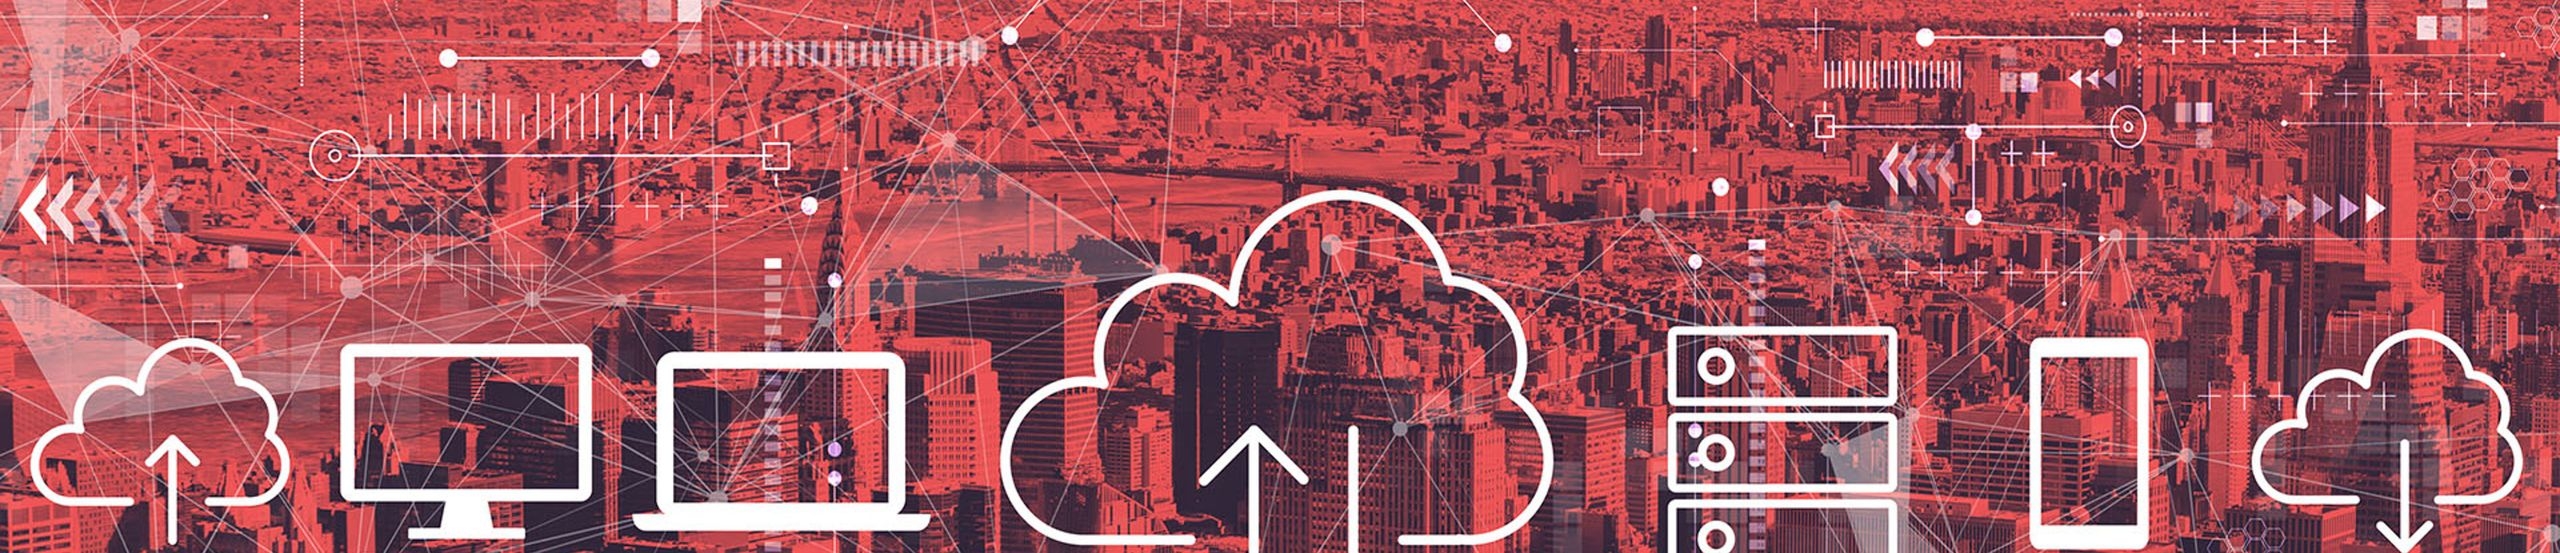 Skyline von New York rötlich gefärbt im Hintergrund, im Vordergrund weiße Smybole für Cloud-Computing, zum Beispiel Wolken, Notebook, Bildschirm, Ordner